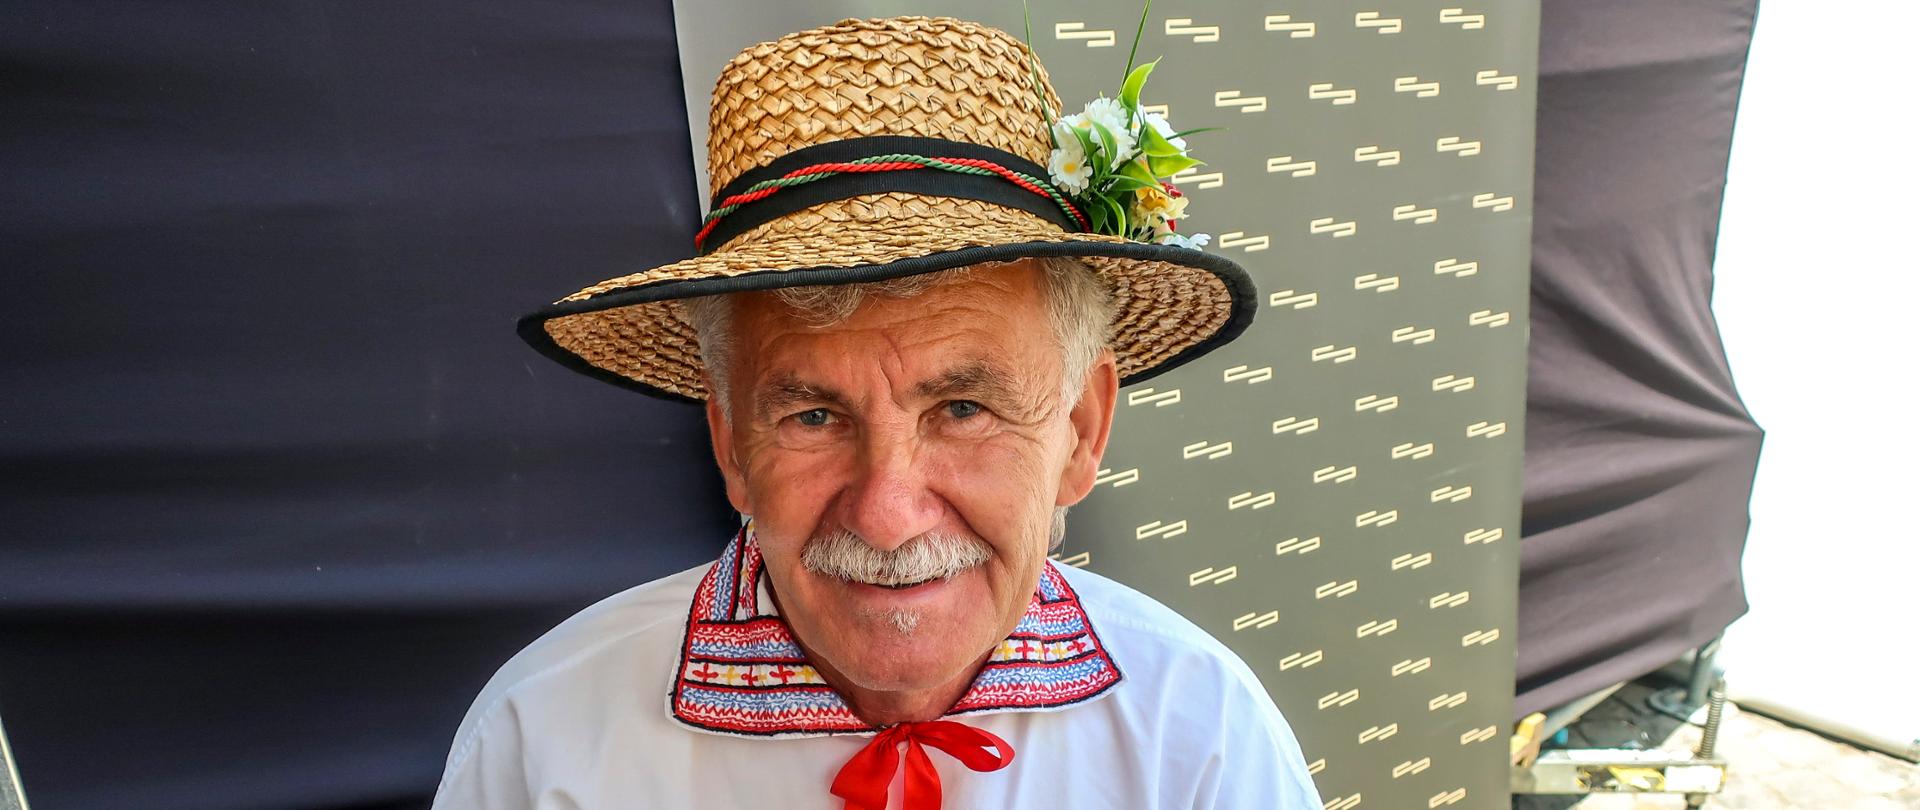 Zdjęcie przedstawia starszego mężczyznę w białej koszuli ludowej z kolorowym, haftowanym kołnierzem i czerwoną kokardką. Na głowie ma słomiany kapelusz.